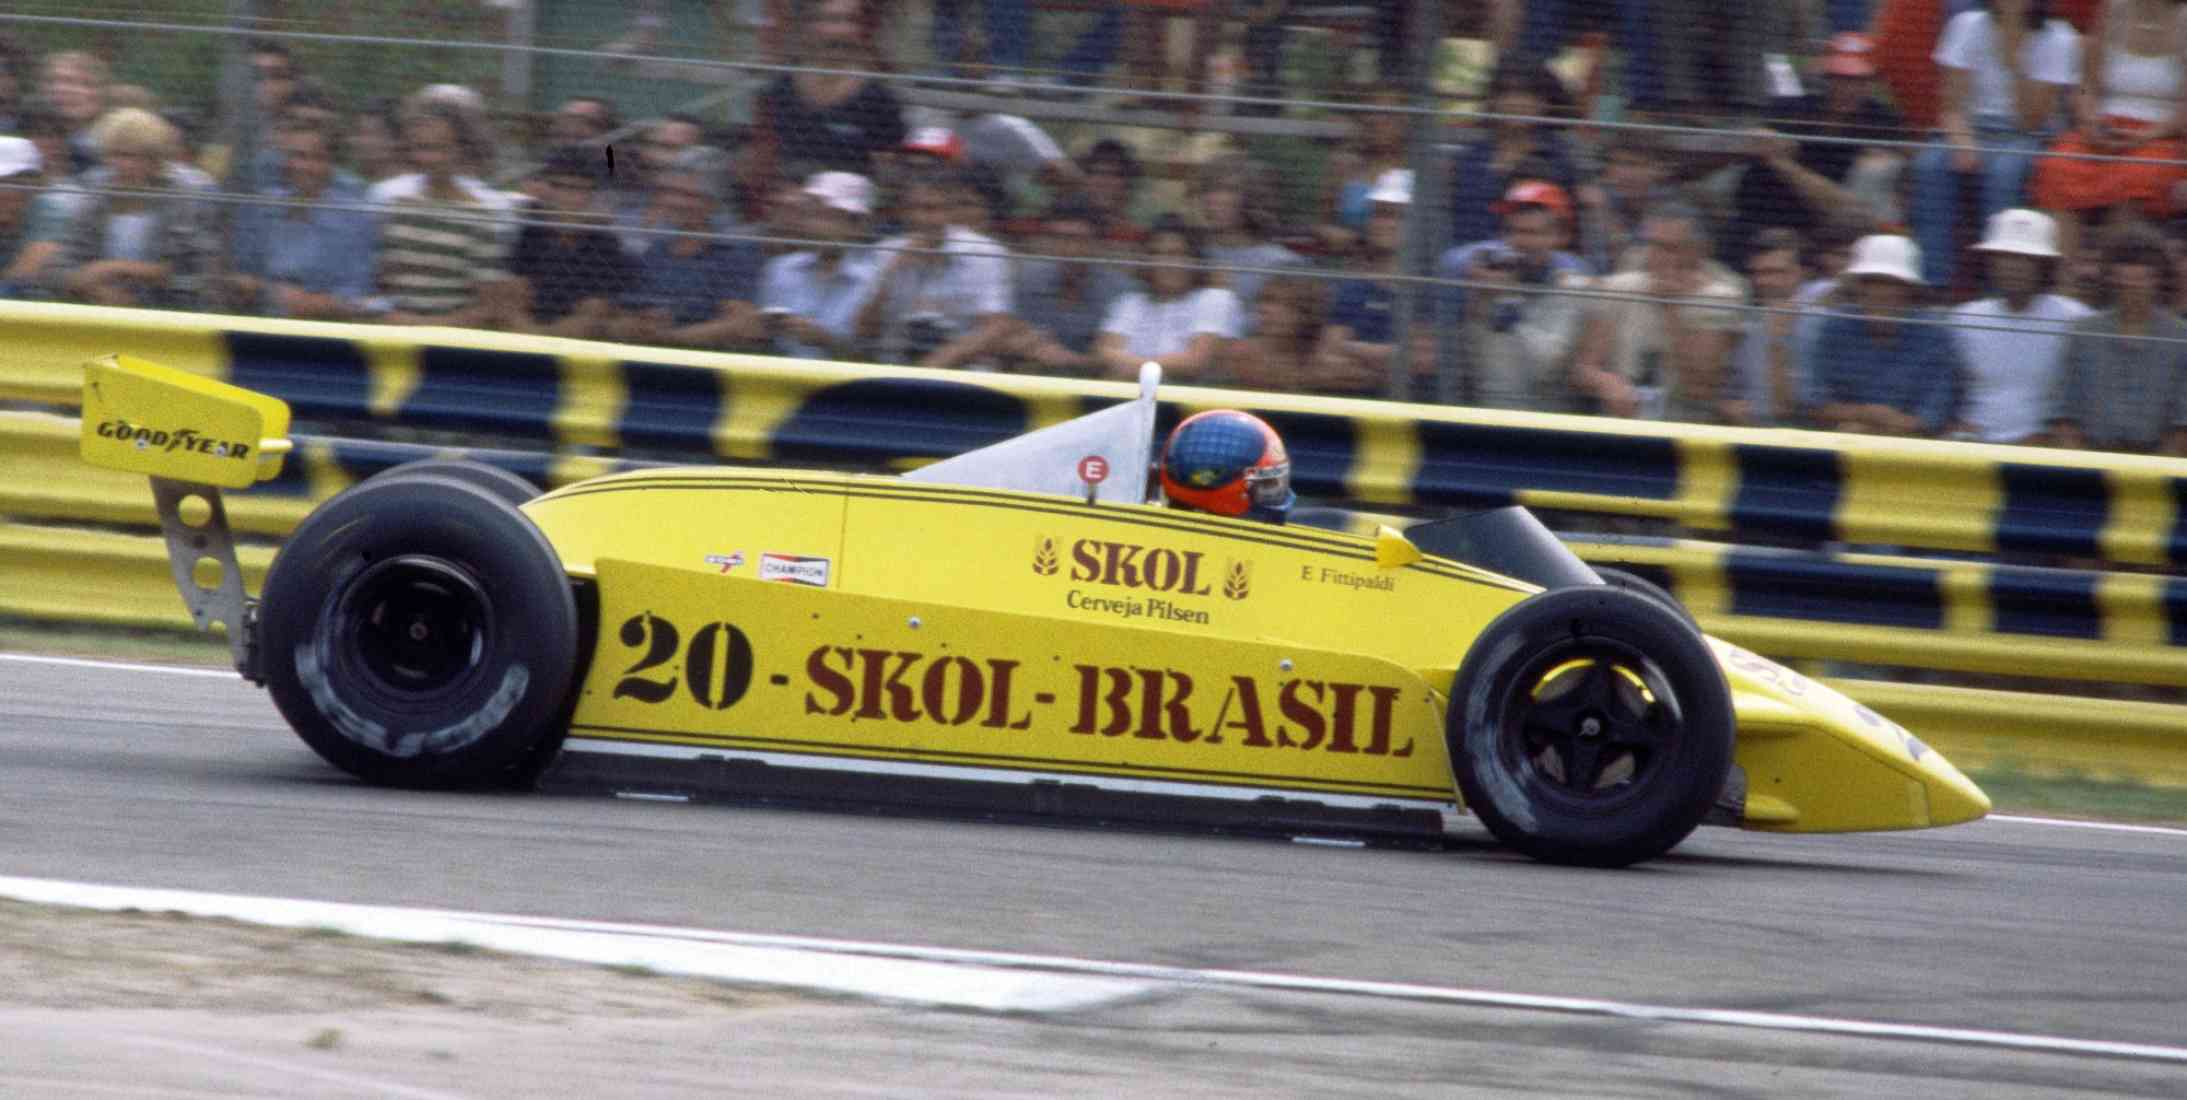 Brazilian Former F1 driver Emerson Fittipaldi driving a Formula 1 car